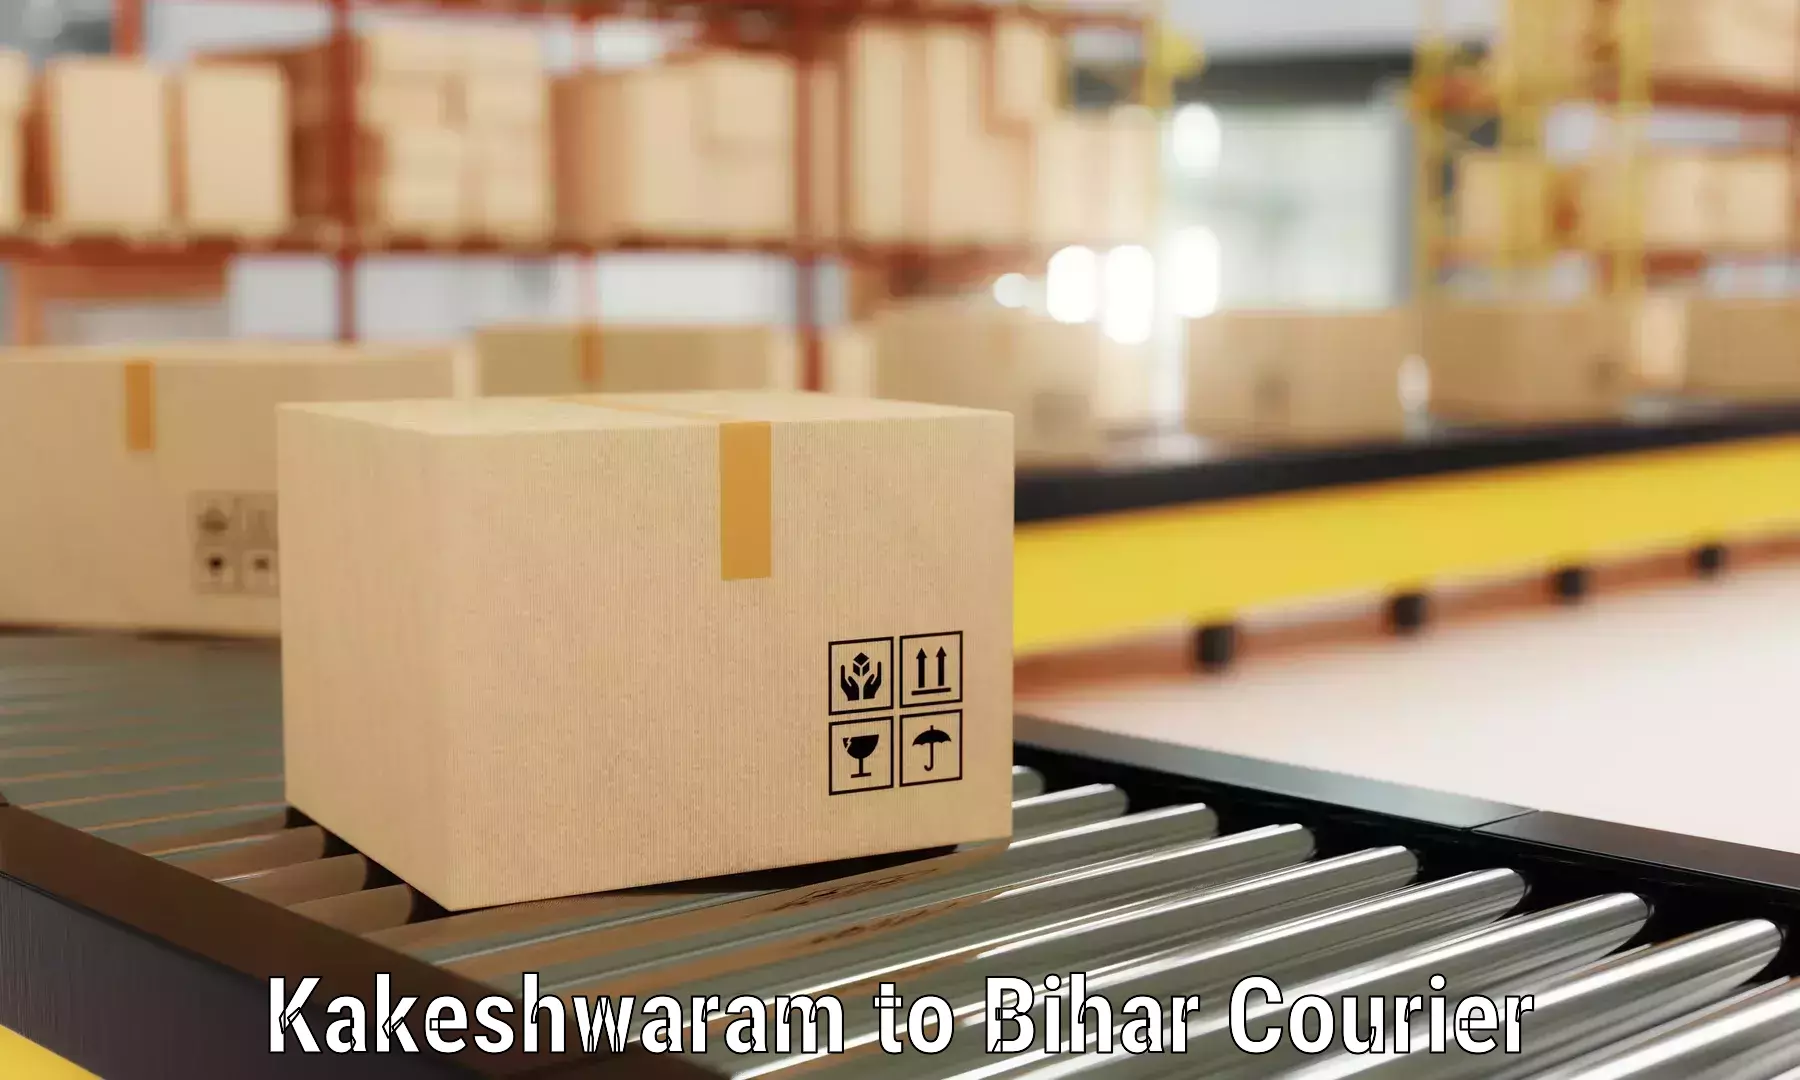 Furniture moving services Kakeshwaram to Forbesganj